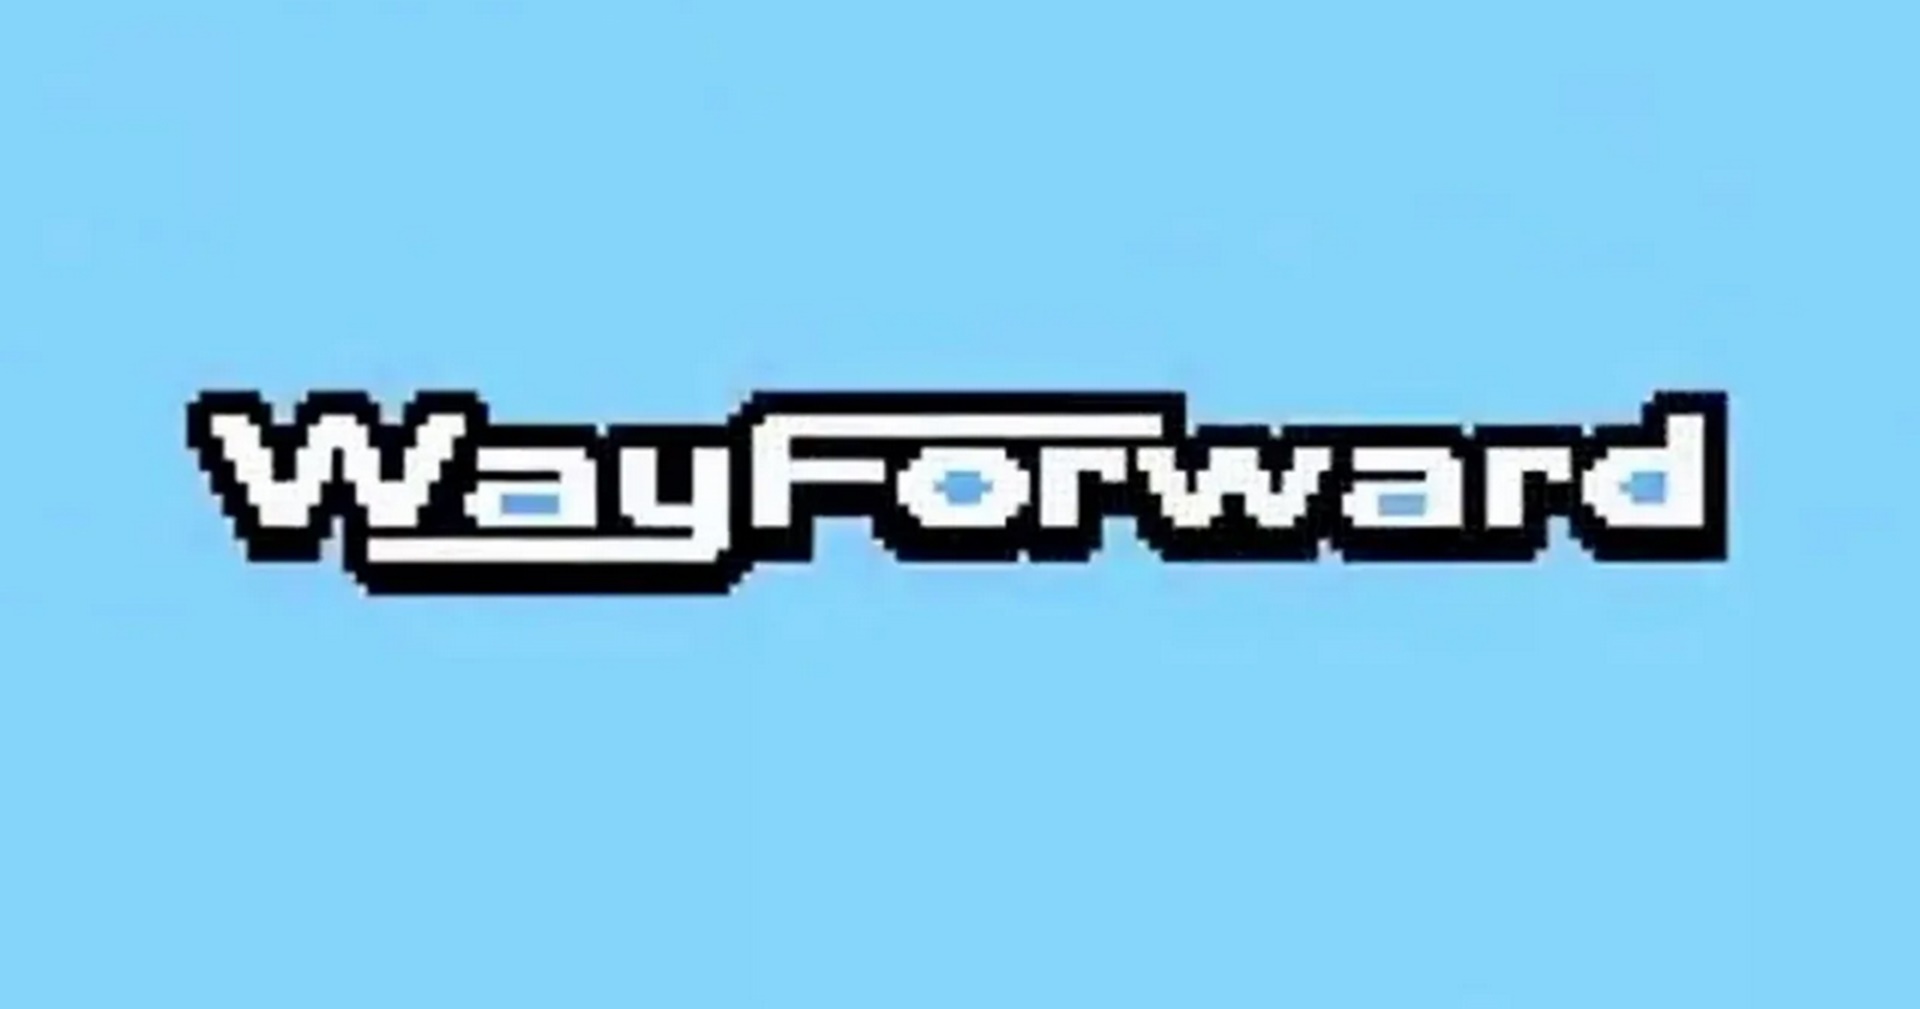 ค่าย WayForward กำลังสร้างเกมที่น่าประทับใจที่สุดในรอบ 2 ปีออกมา